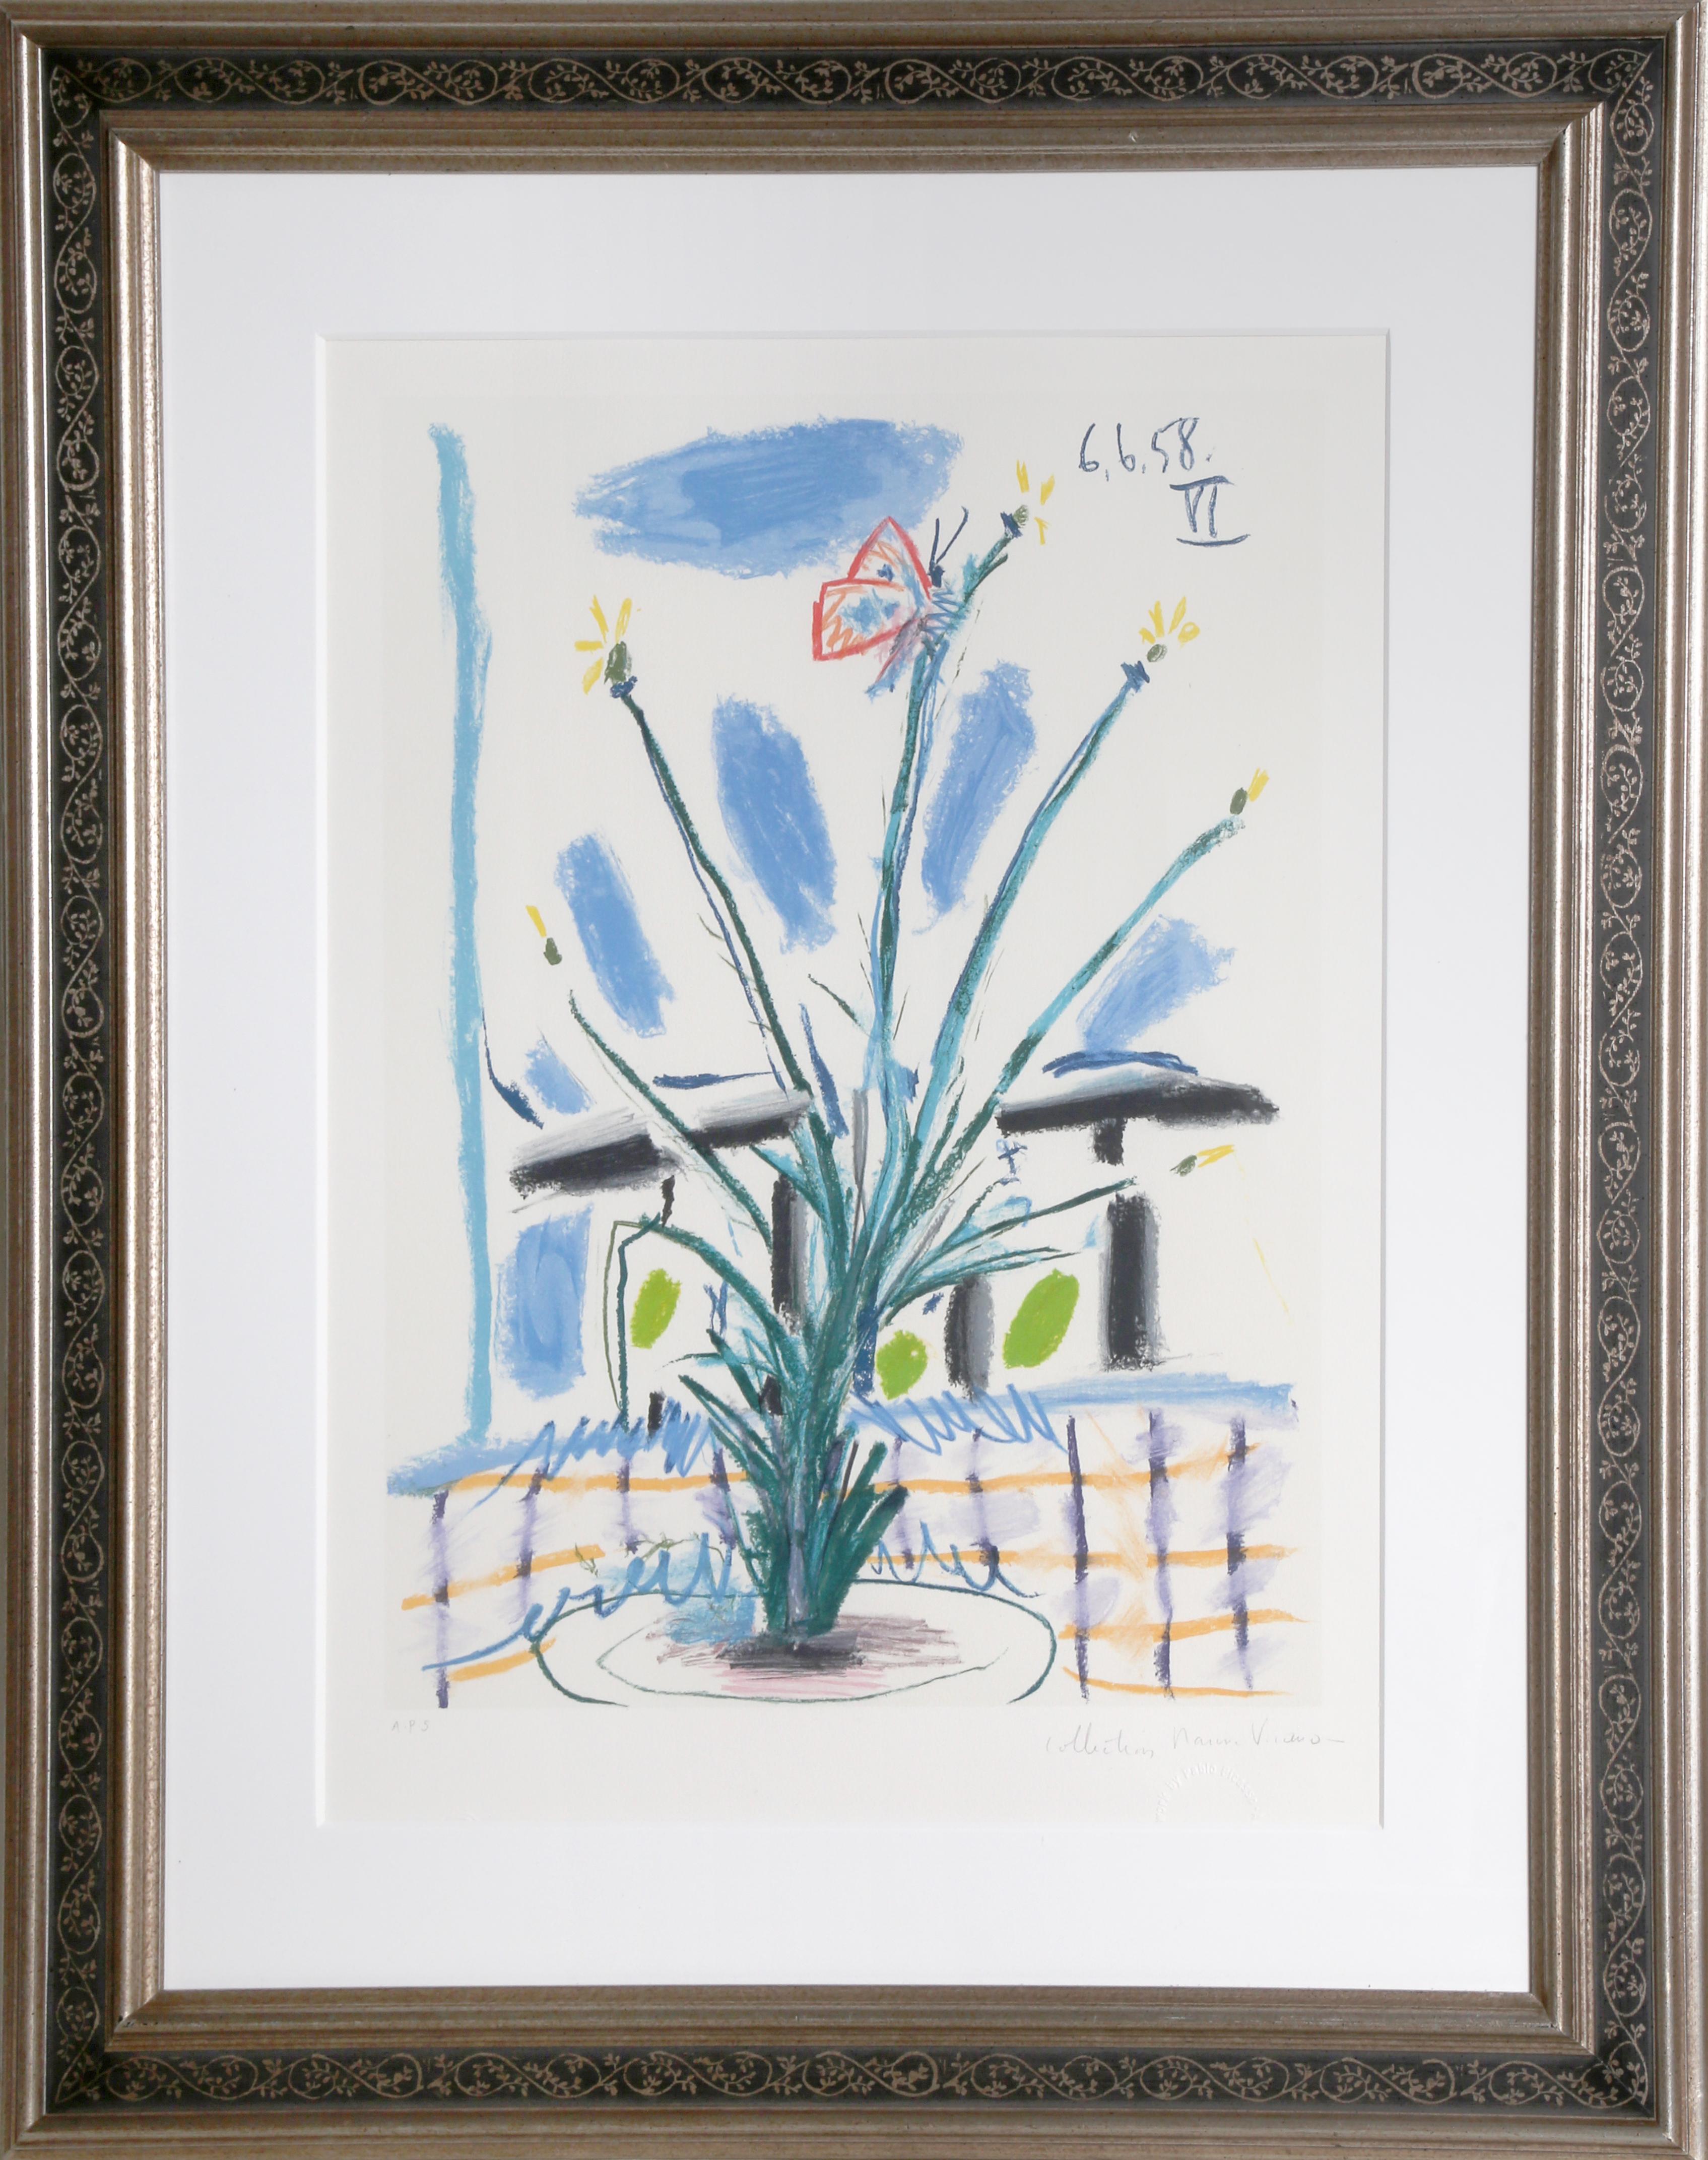 Eine Lithographie aus der Marina Picasso Estate Collection nach dem Gemälde "Le Bouquet" von Pablo Picasso.  Das Originalgemälde wurde 1958 fertiggestellt. In den 1970er Jahren, nach Picassos Tod, autorisierte Marina Picasso, seine Enkelin, die